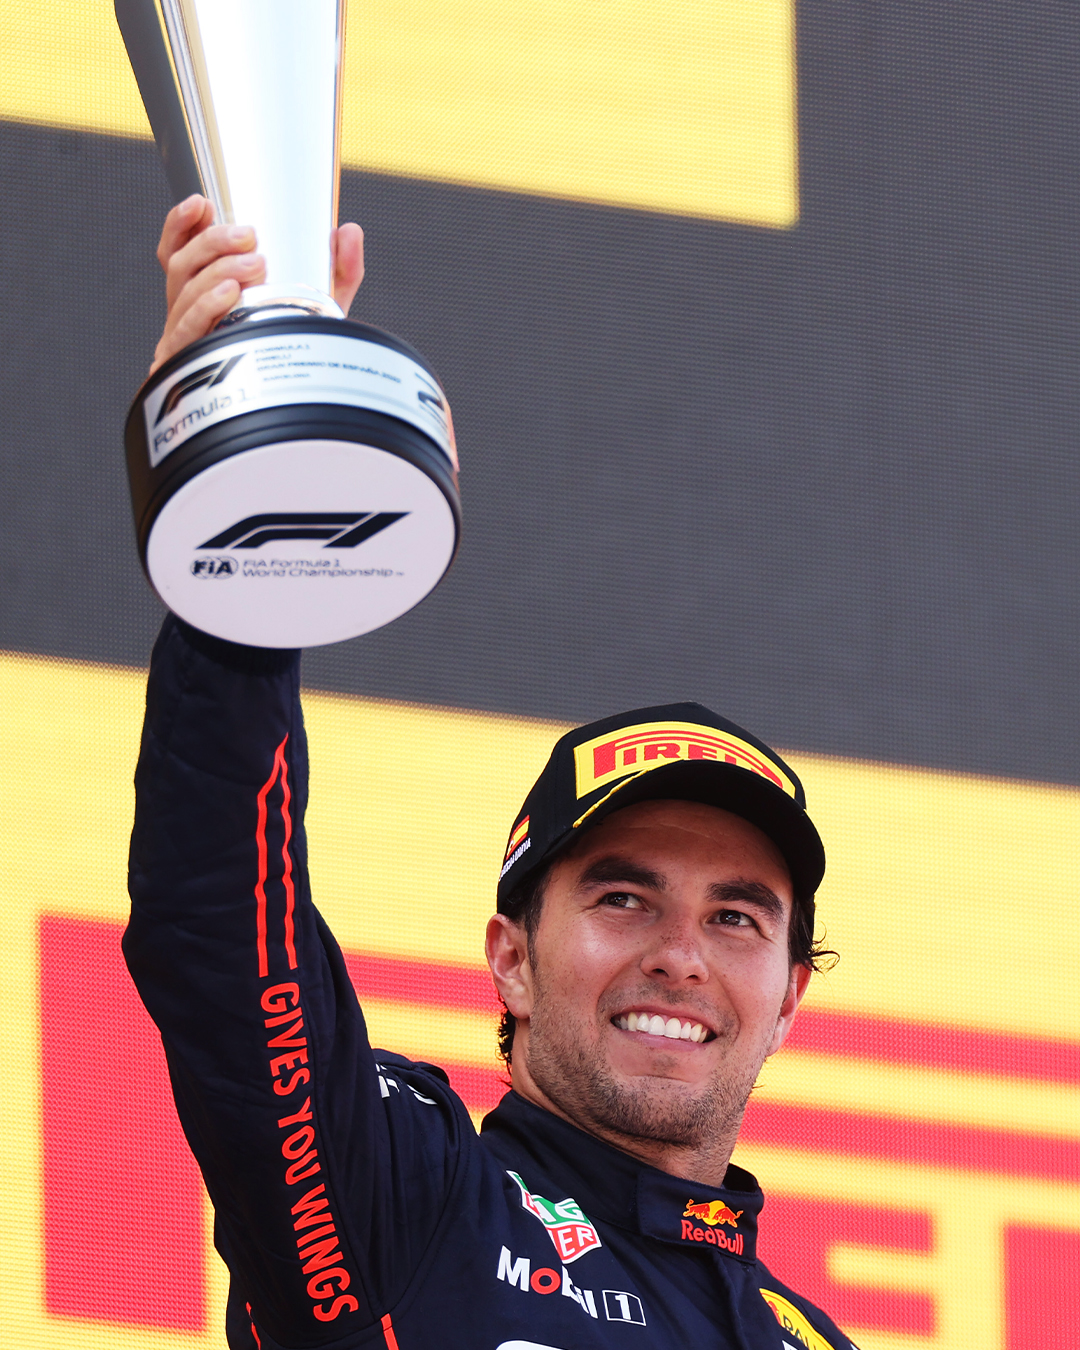 Sergio Pérez consiguió el segundo puesto en el GP de España, previo al de Mónaco. Foto: @redbullracing